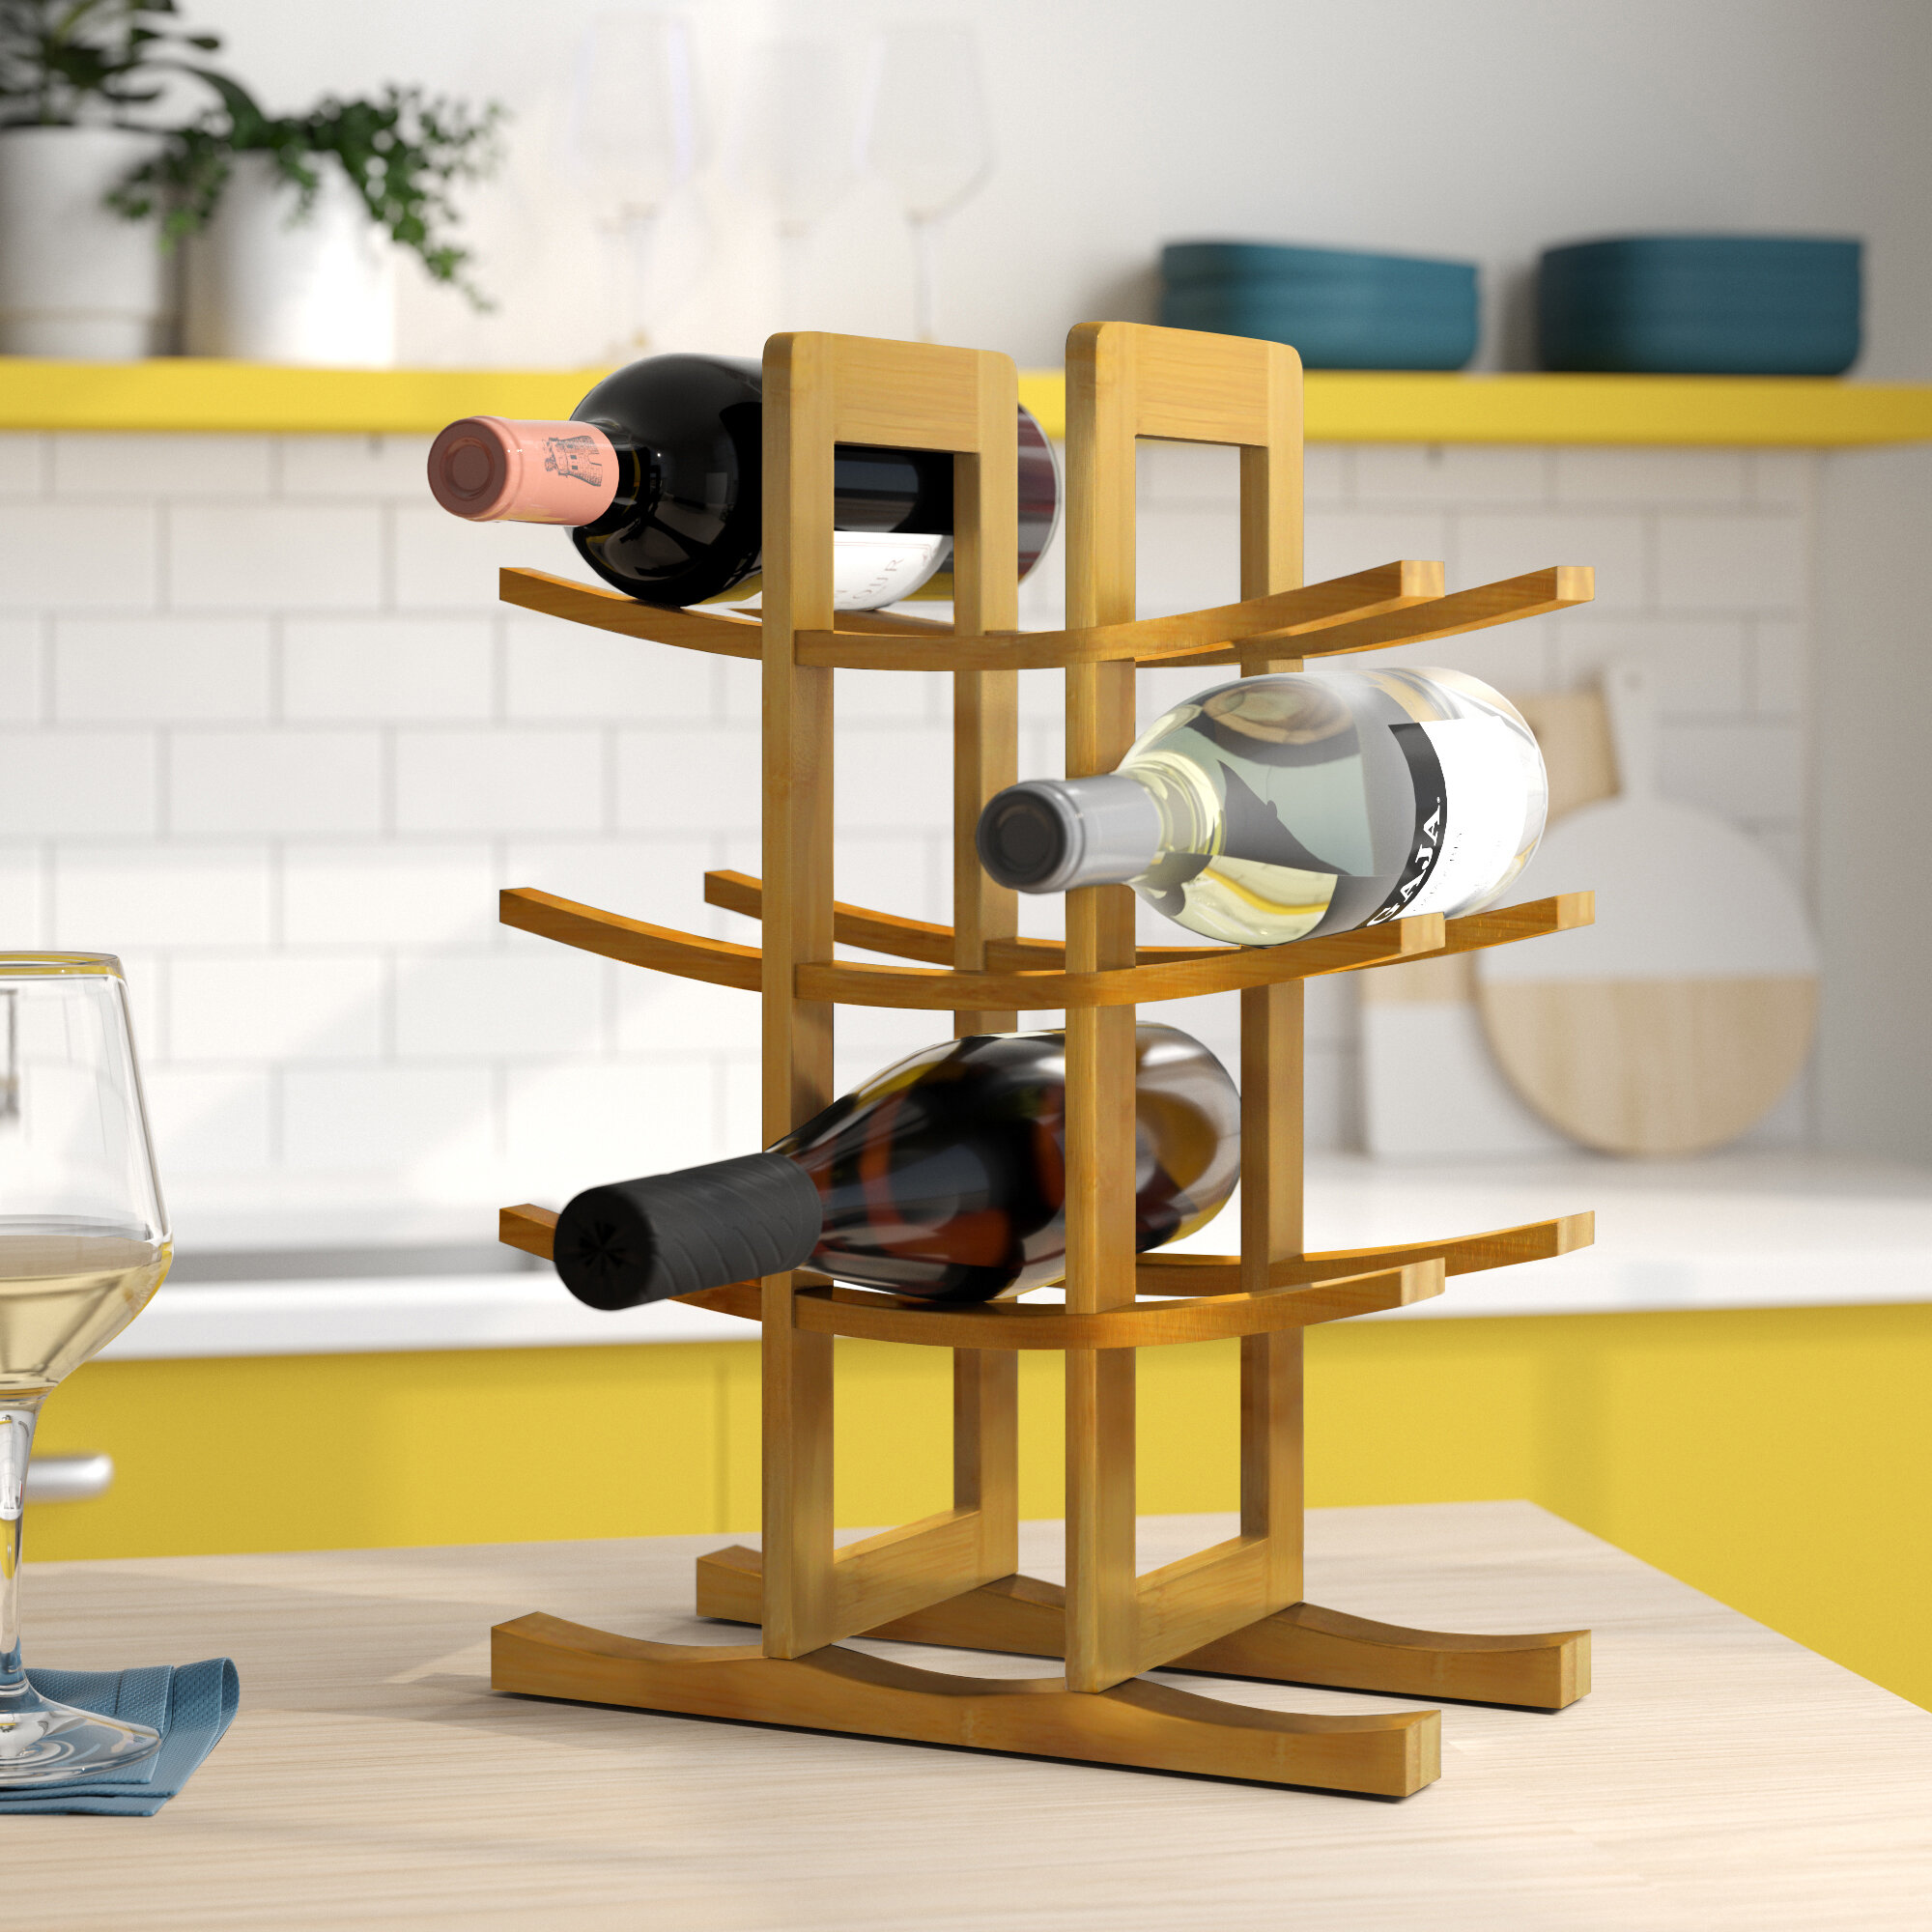 MUGLIO Foldable Wooden Wine Bottle Holder Shelves for 3 Wine Bottles,Tabletop Wine Rack 